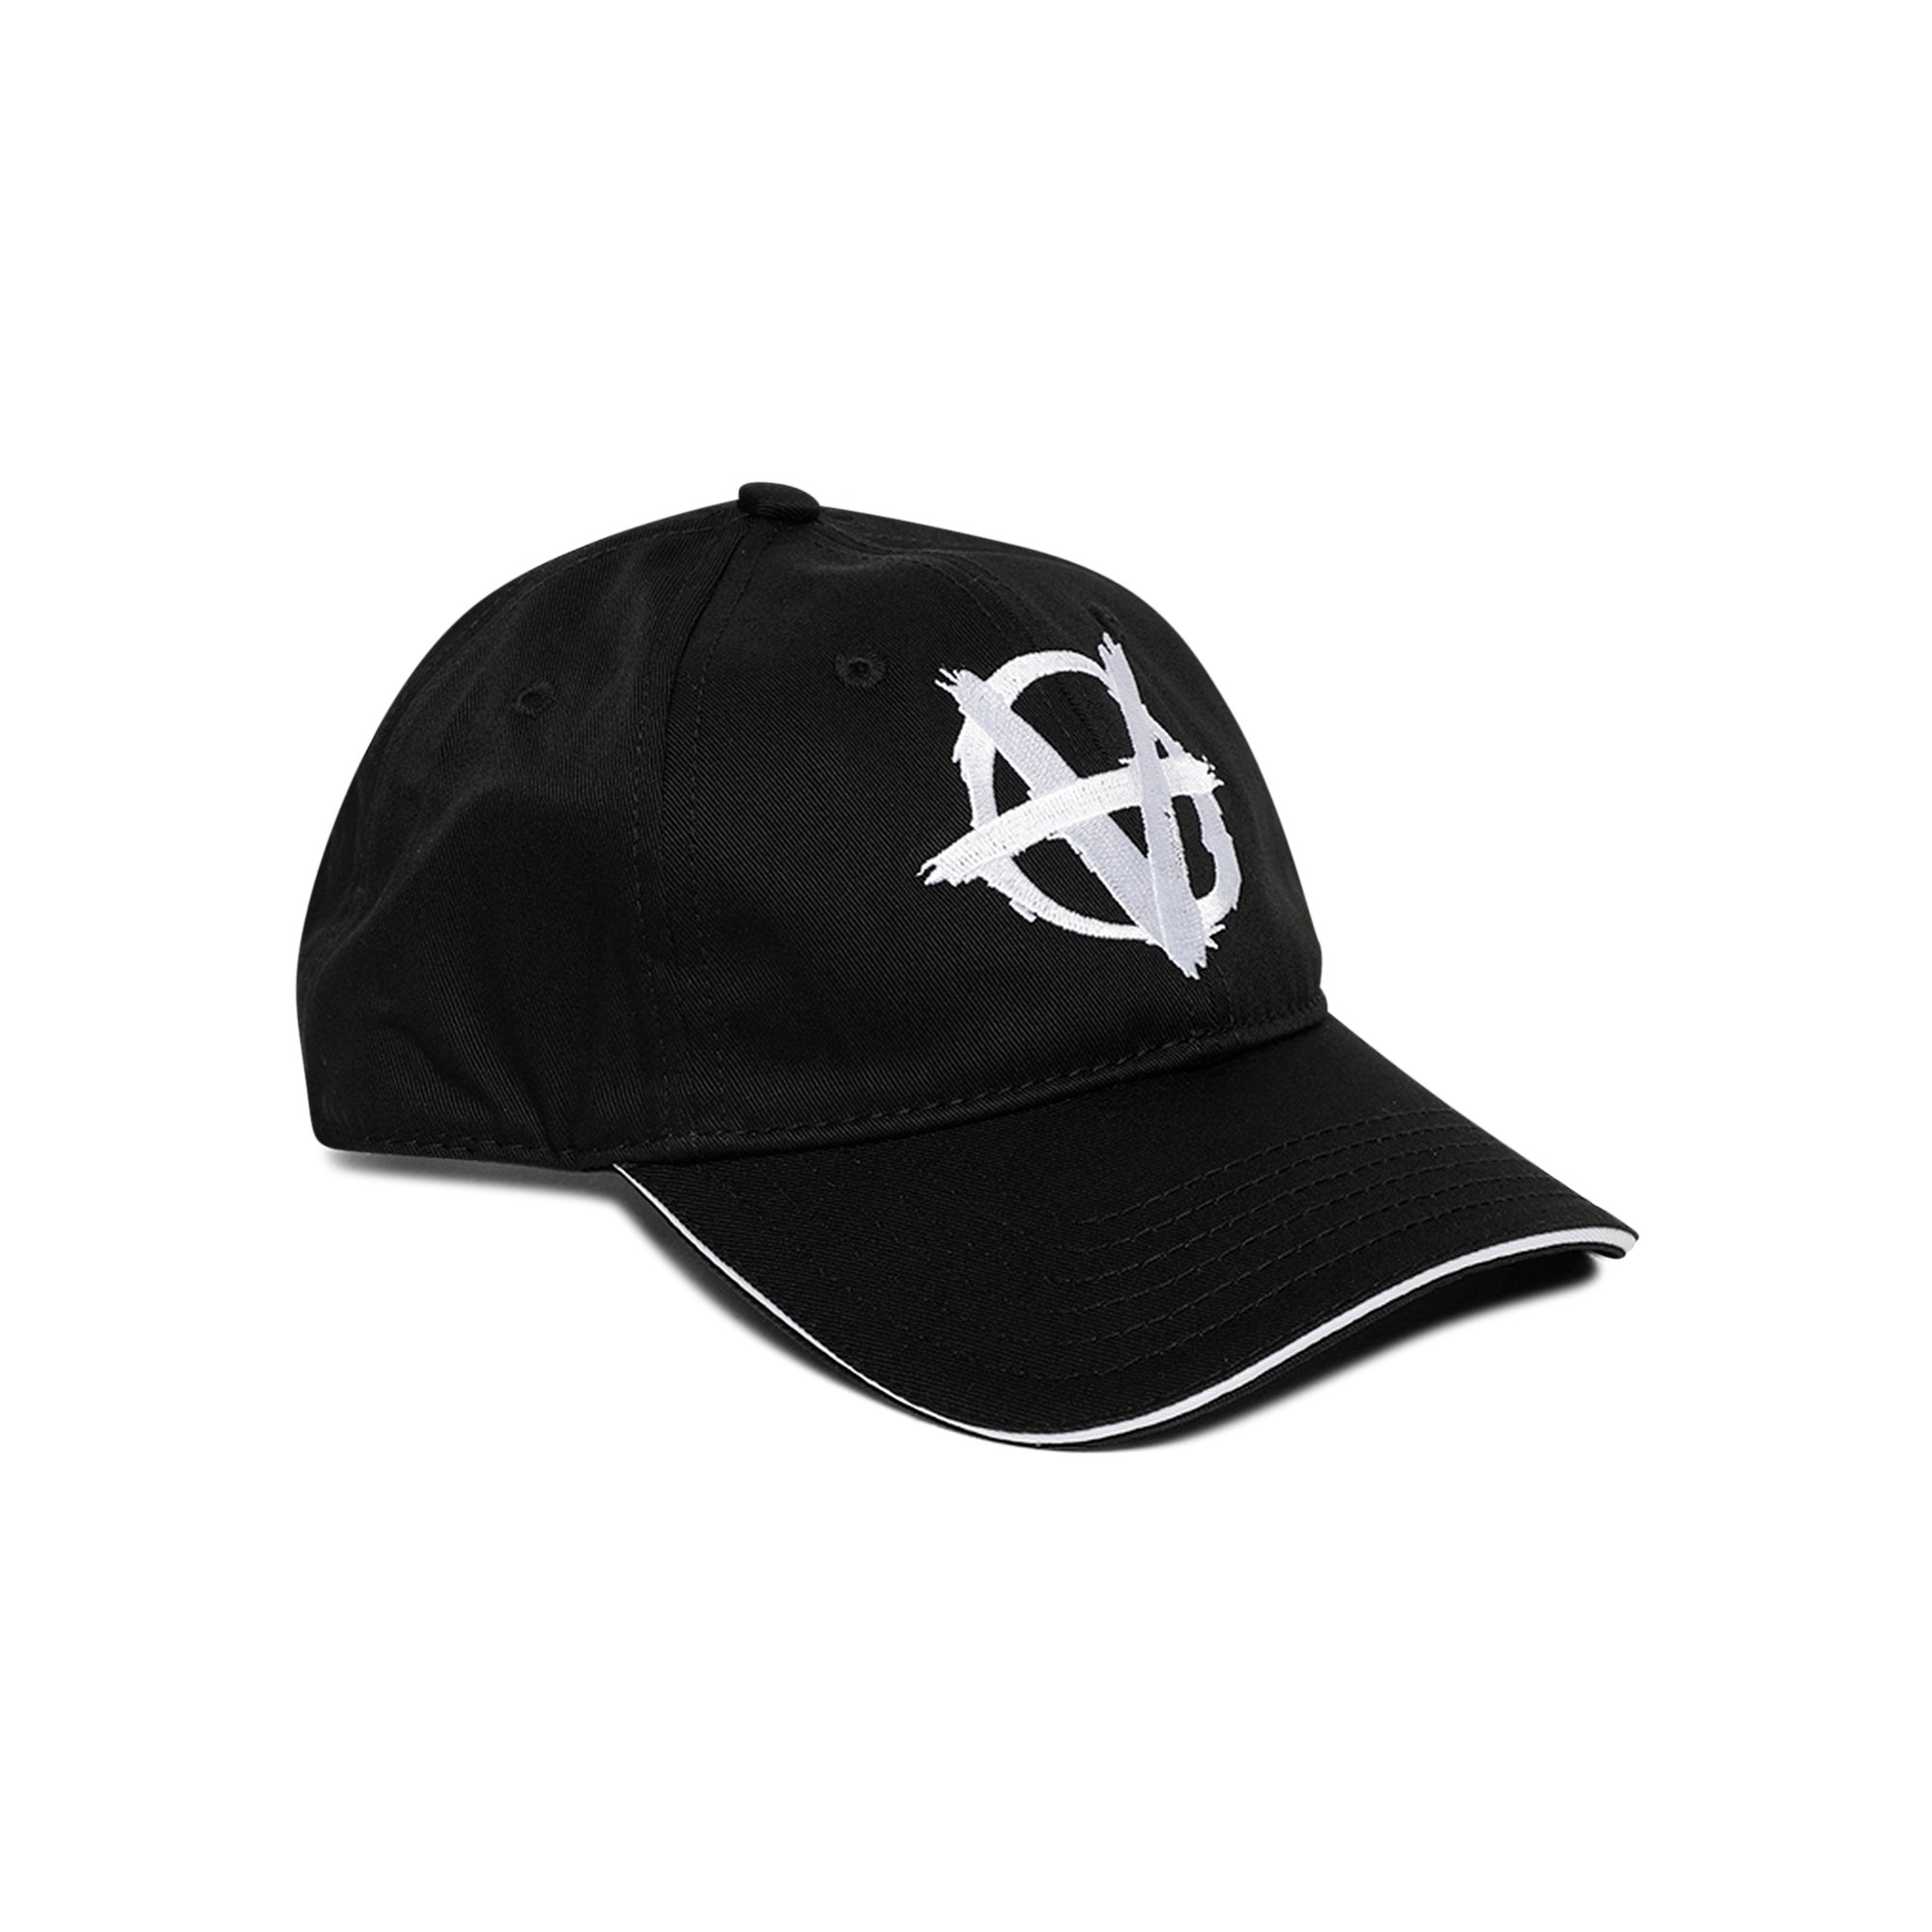 お買い得格安VETEMENTS anarchy キャップ 帽子